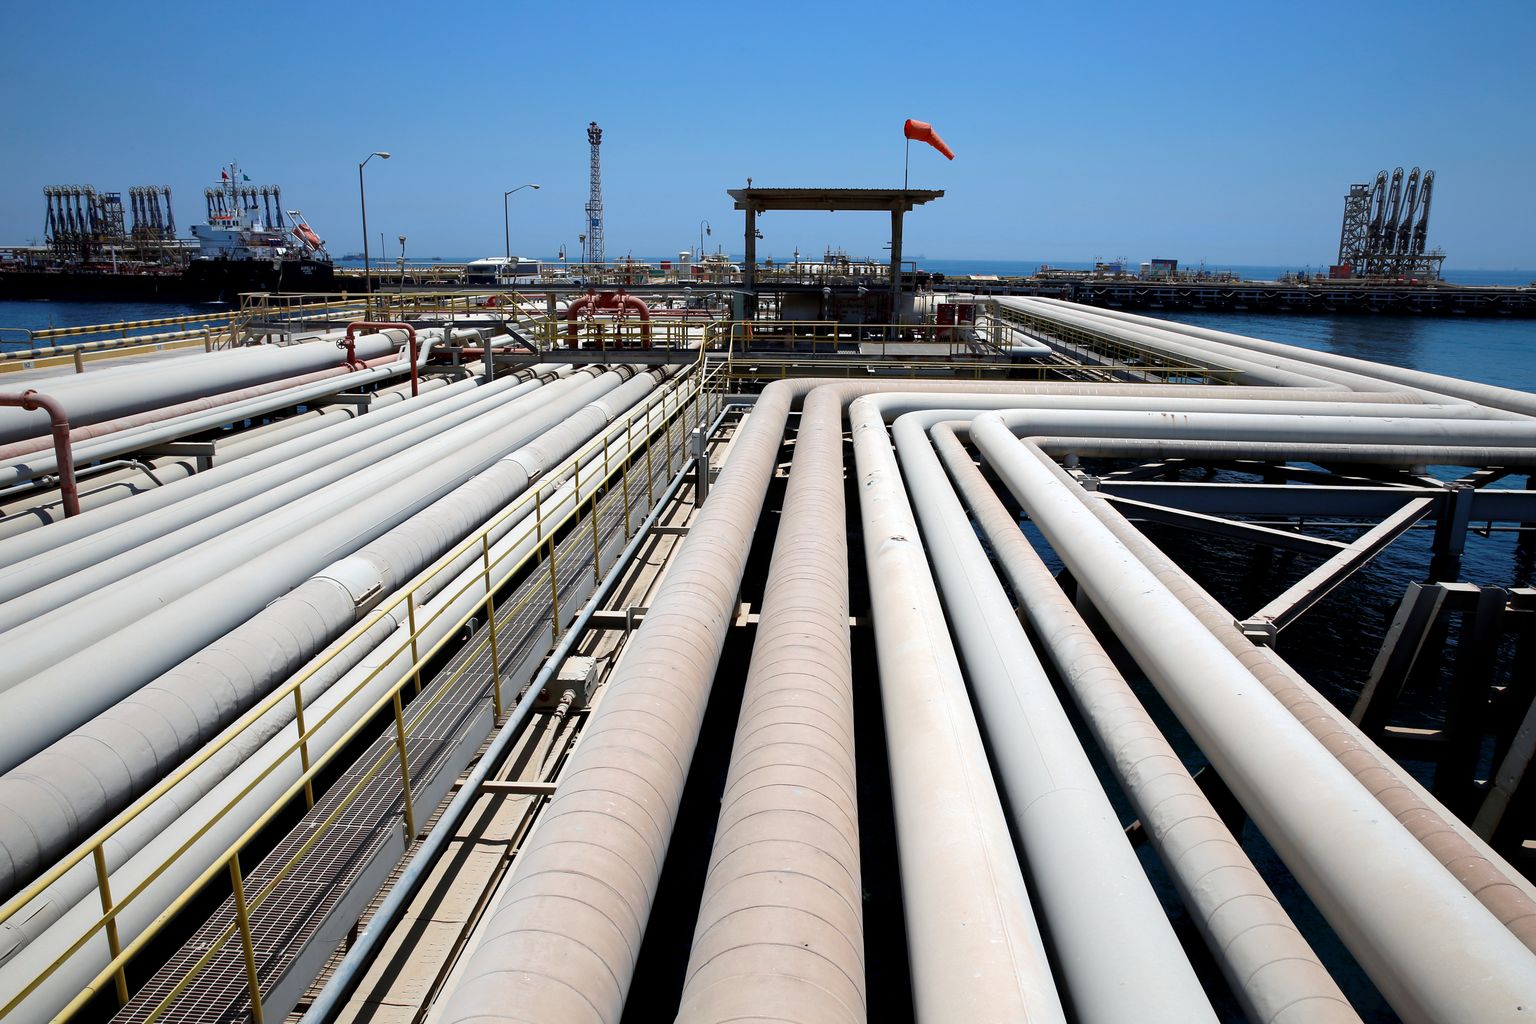 Tankerile lasti laadimine Saudi Araabia Aramco Ras Tanura naftatöötlemistehases.